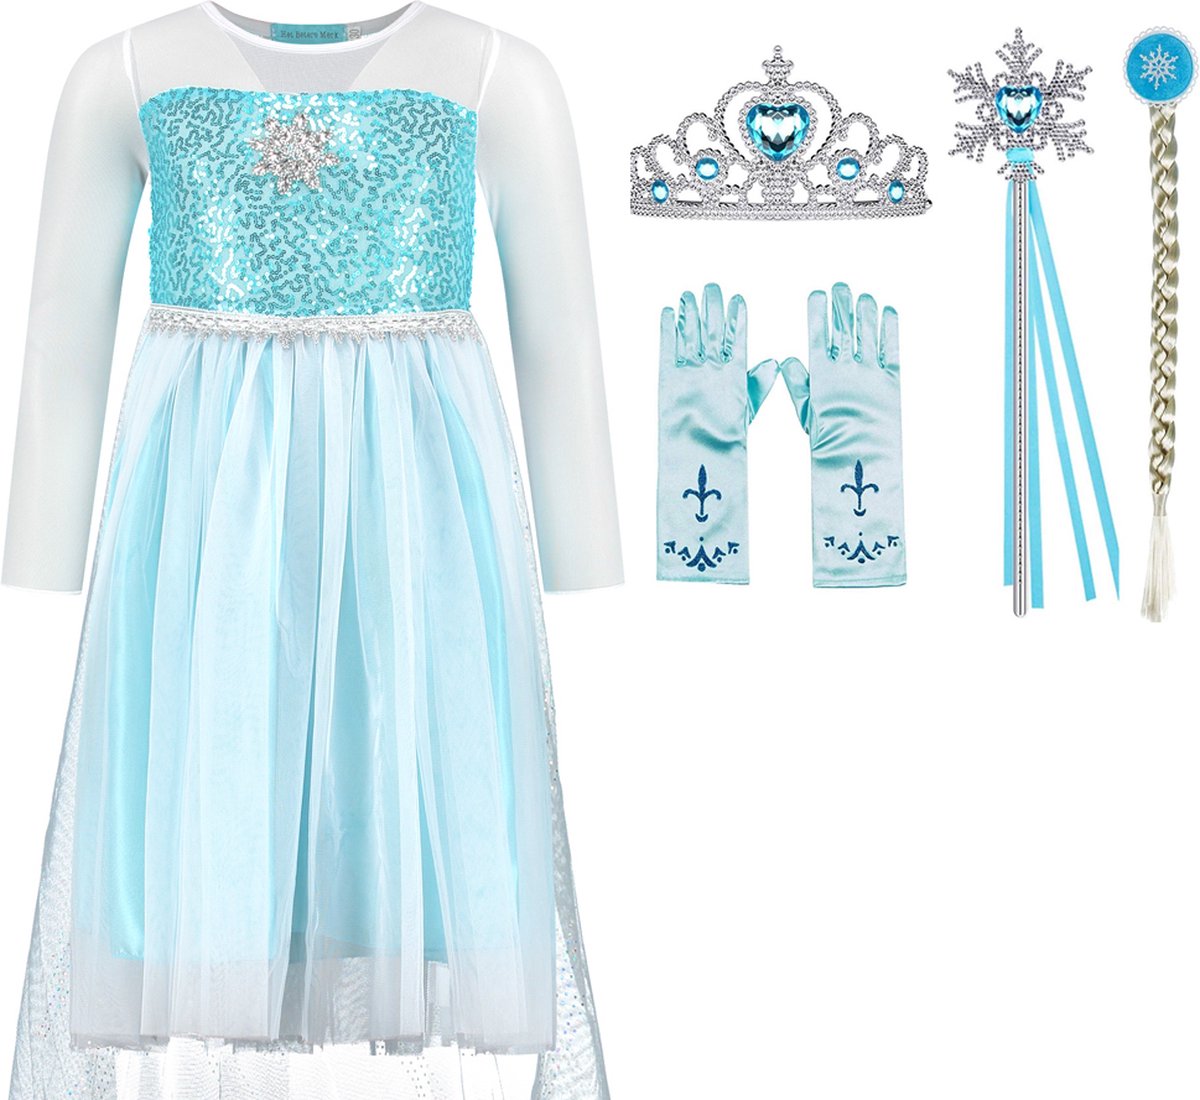 Verkleedkleren meisje - Frozen - Elsa jurk - blauwe prinsessenjurk- maat 140/146 (150) - prinsessen verkleedkleding - kroon - toverstaf - Elsa vlecht - handschoenen